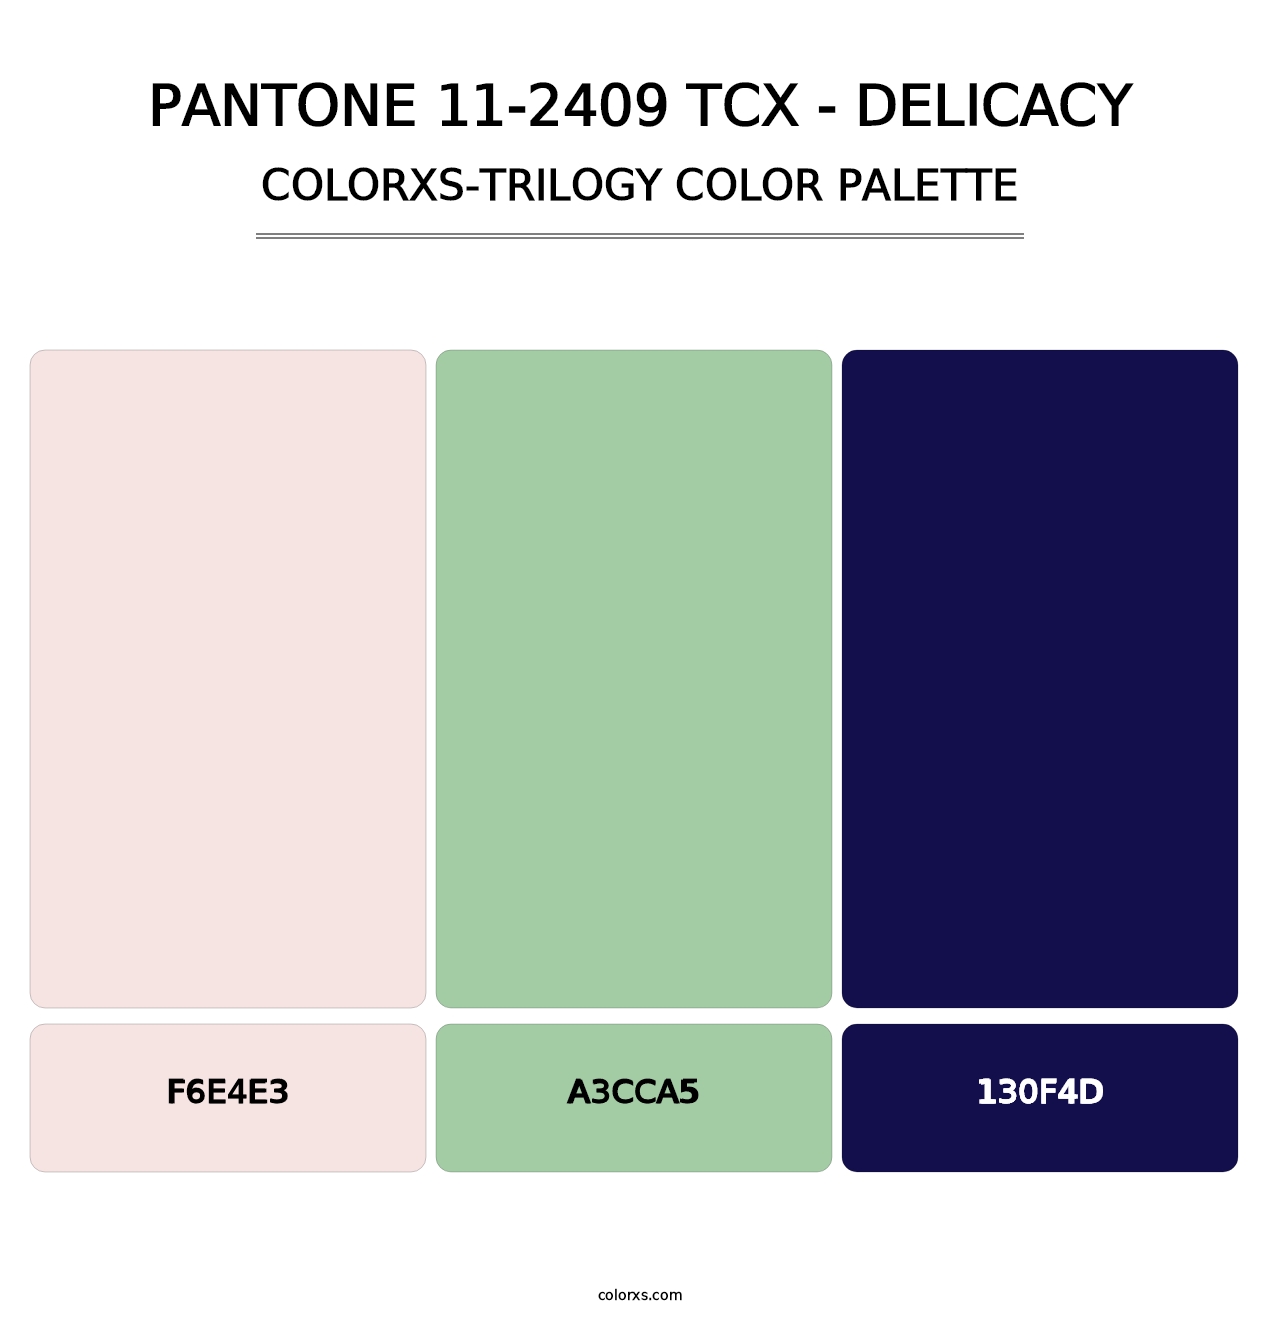 PANTONE 11-2409 TCX - Delicacy - Colorxs Trilogy Palette